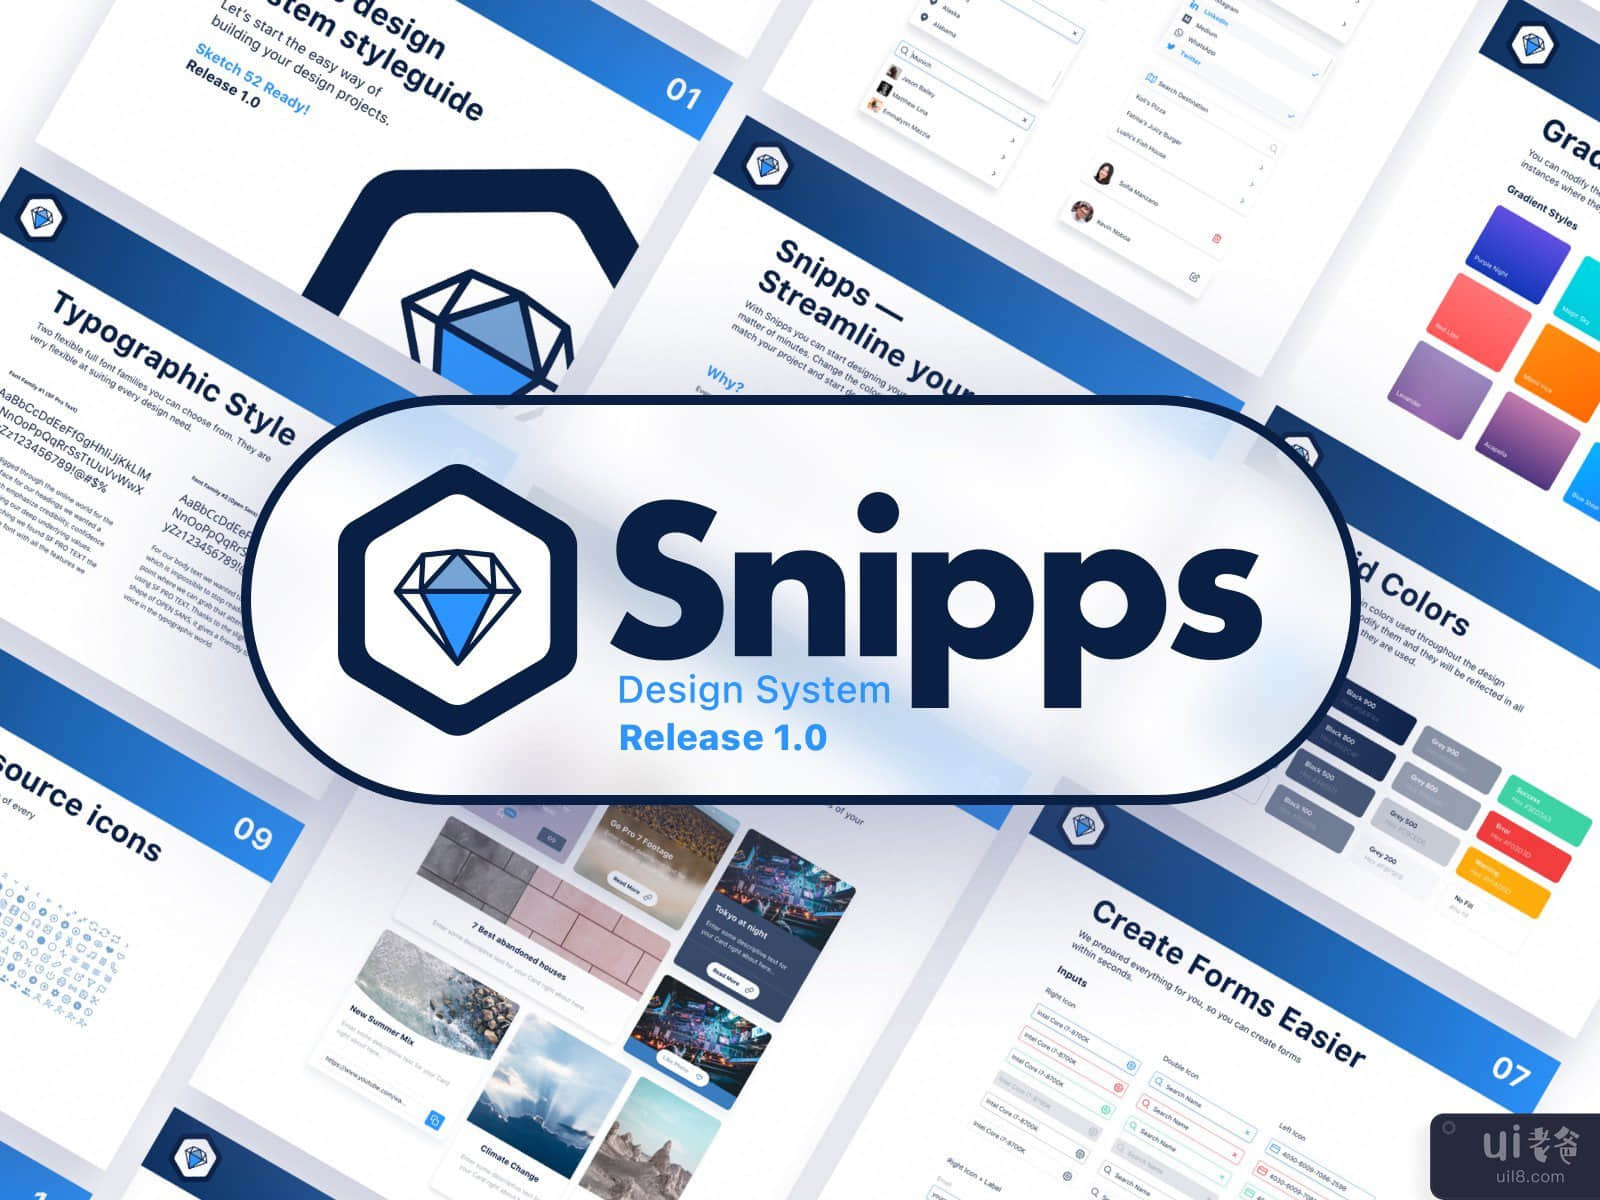  Snipps Design System (Release 1.0)